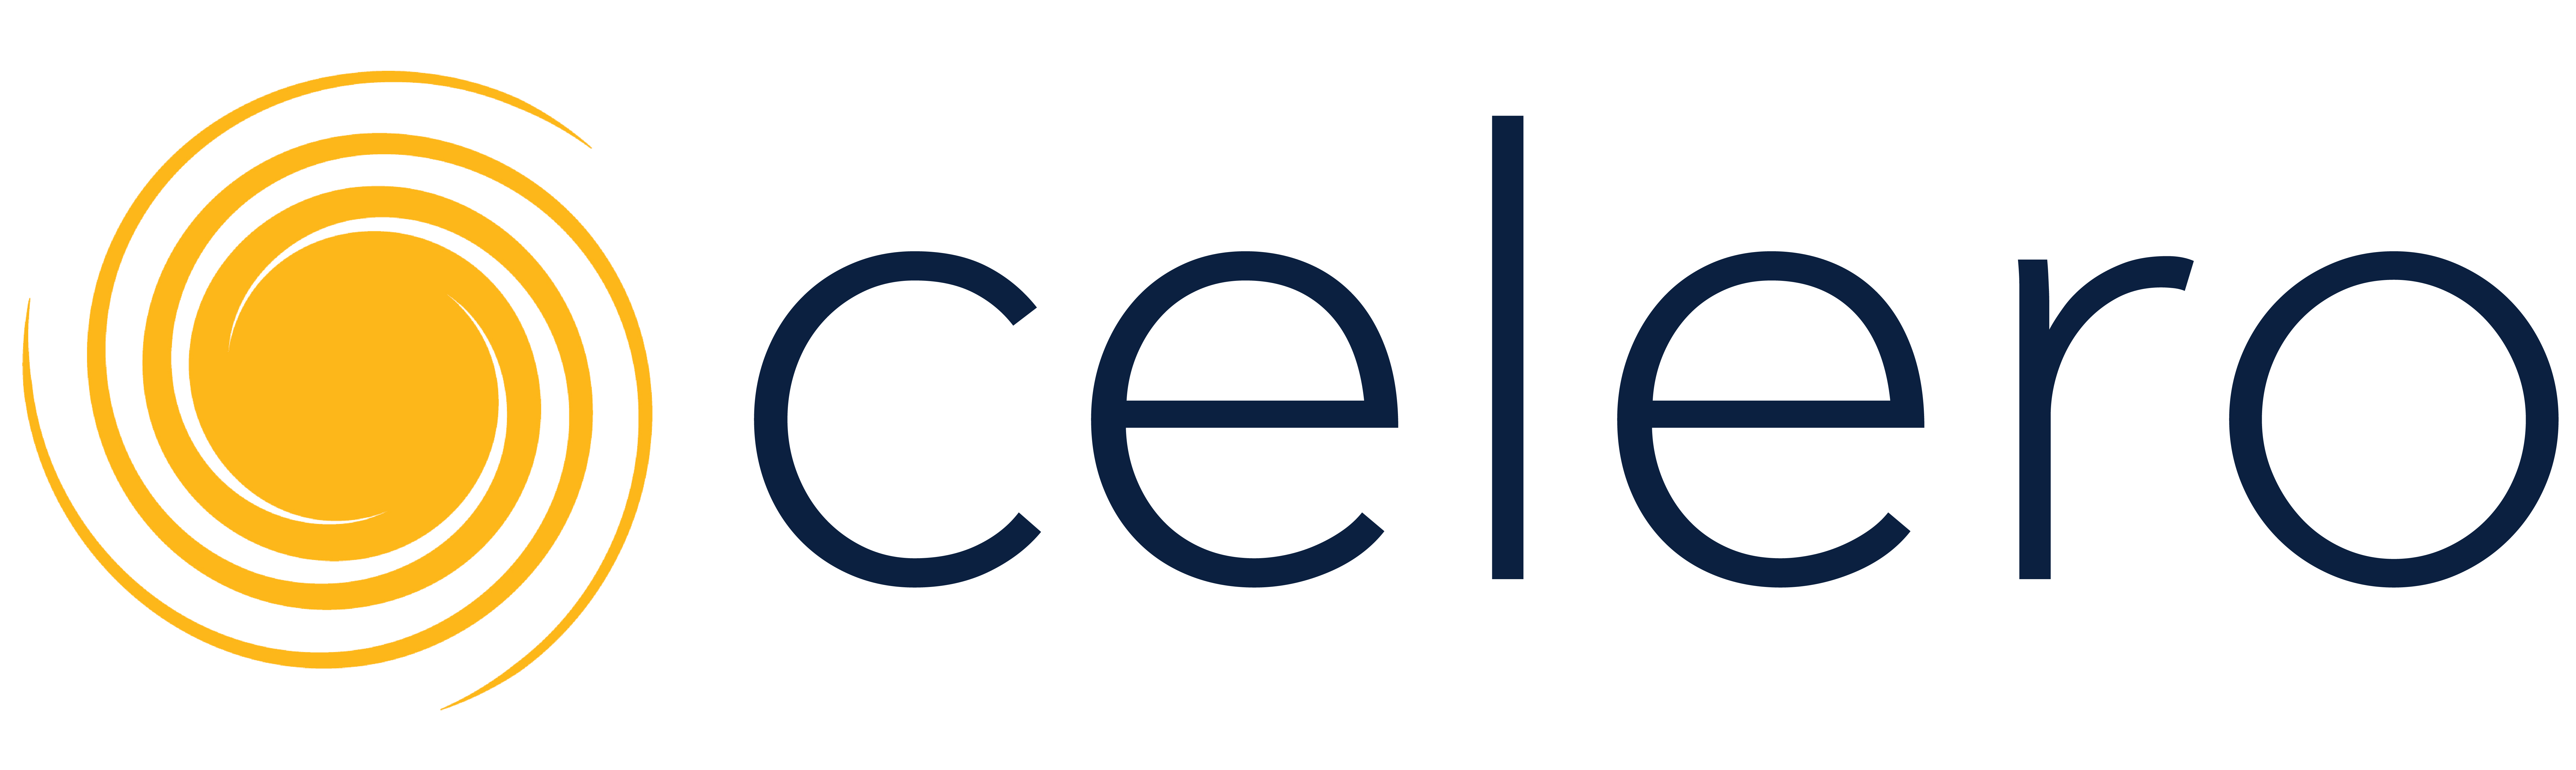 Celero commerce - Alternate logo